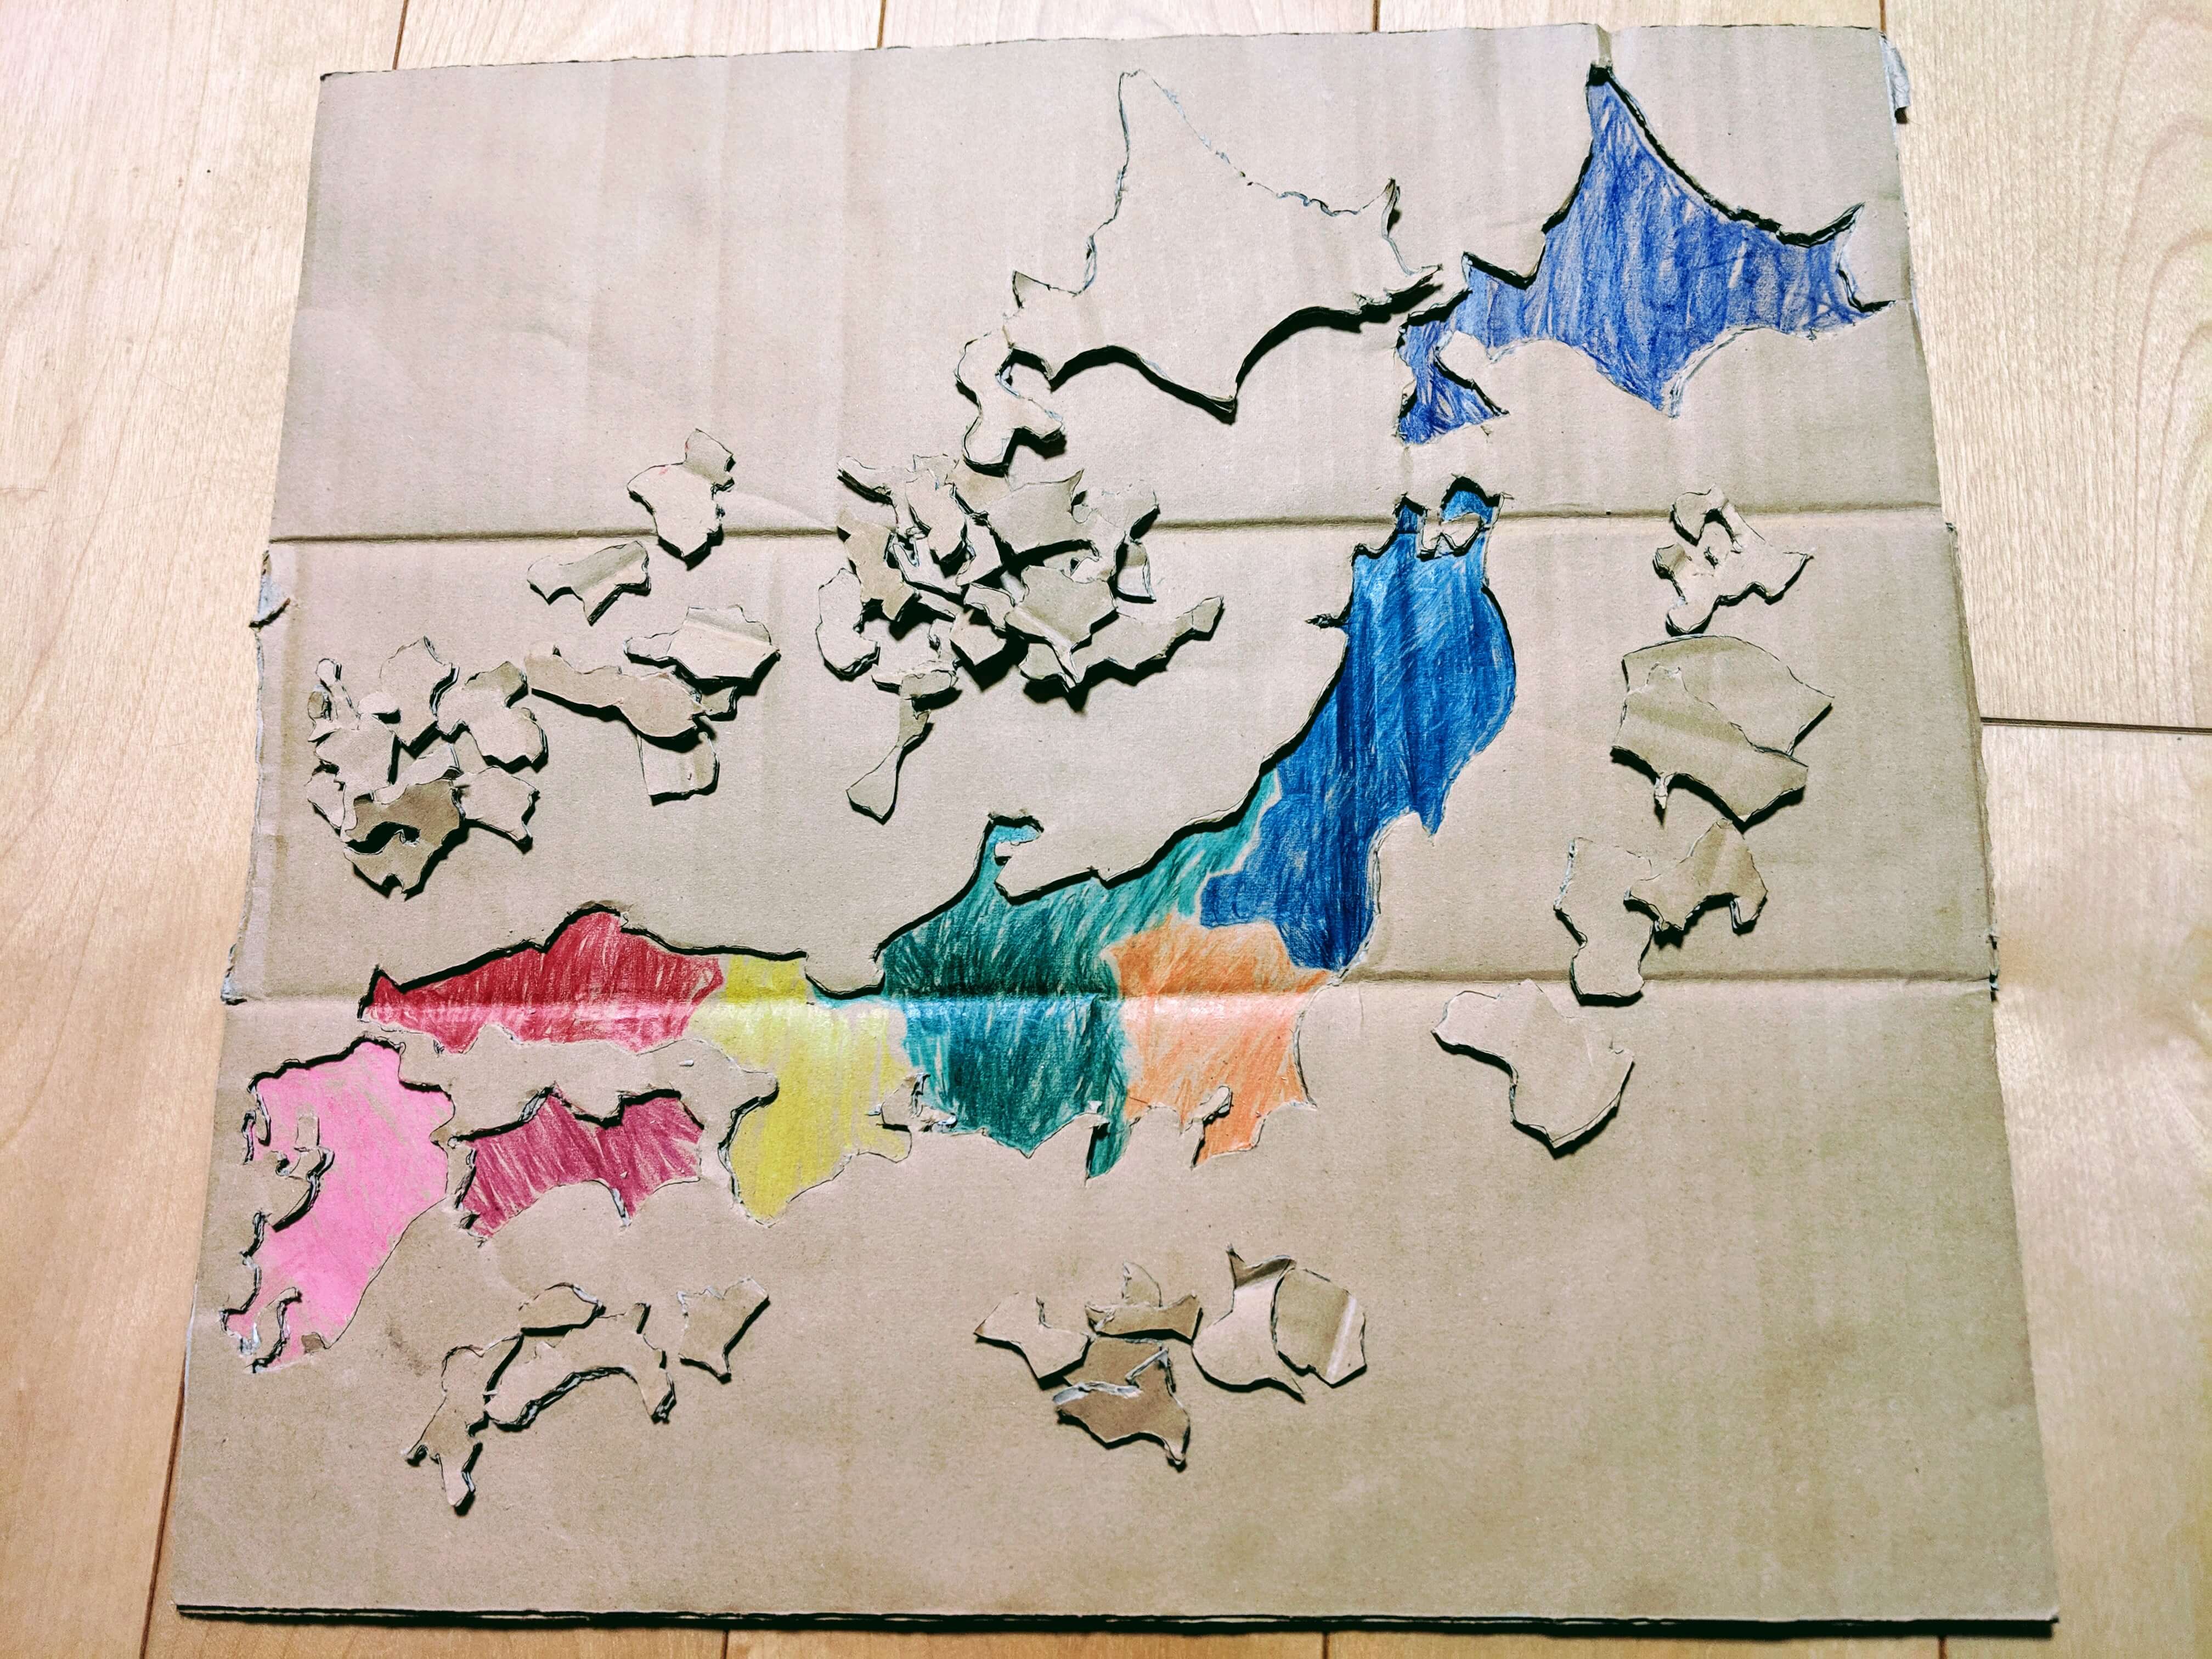 息子と手作り日本地図パズルをつくった Shimabox Blog